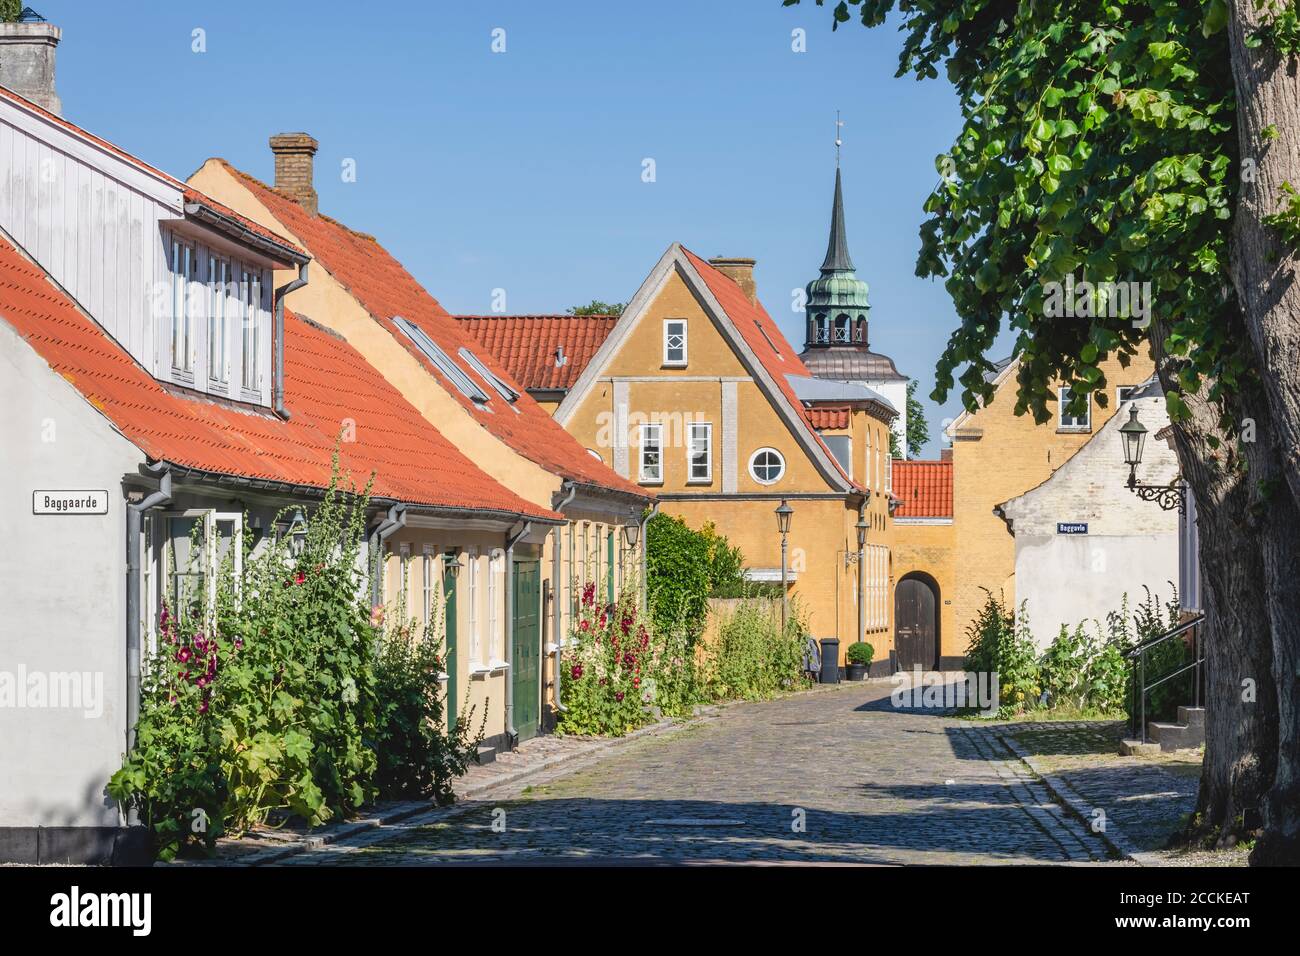 Dänemark, Region Süddänemark, Aeroskobing, Alte Stadthäuser entlang Kopfsteinpflasterstraße Stockfoto